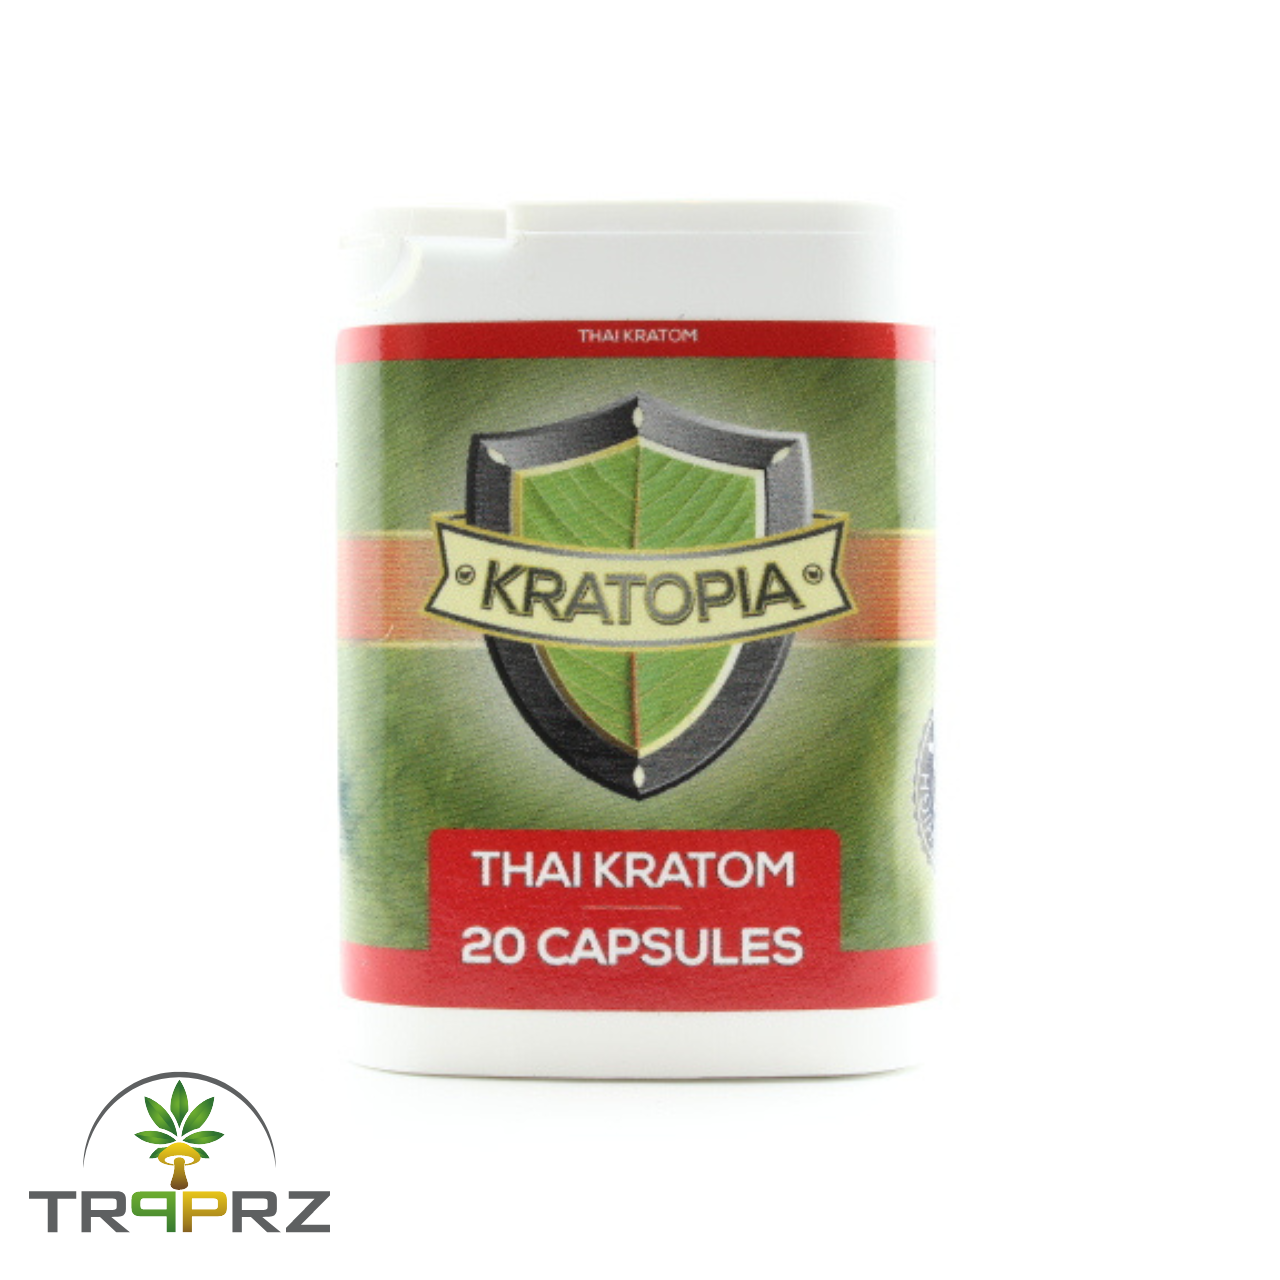 Thai Kratom capsules